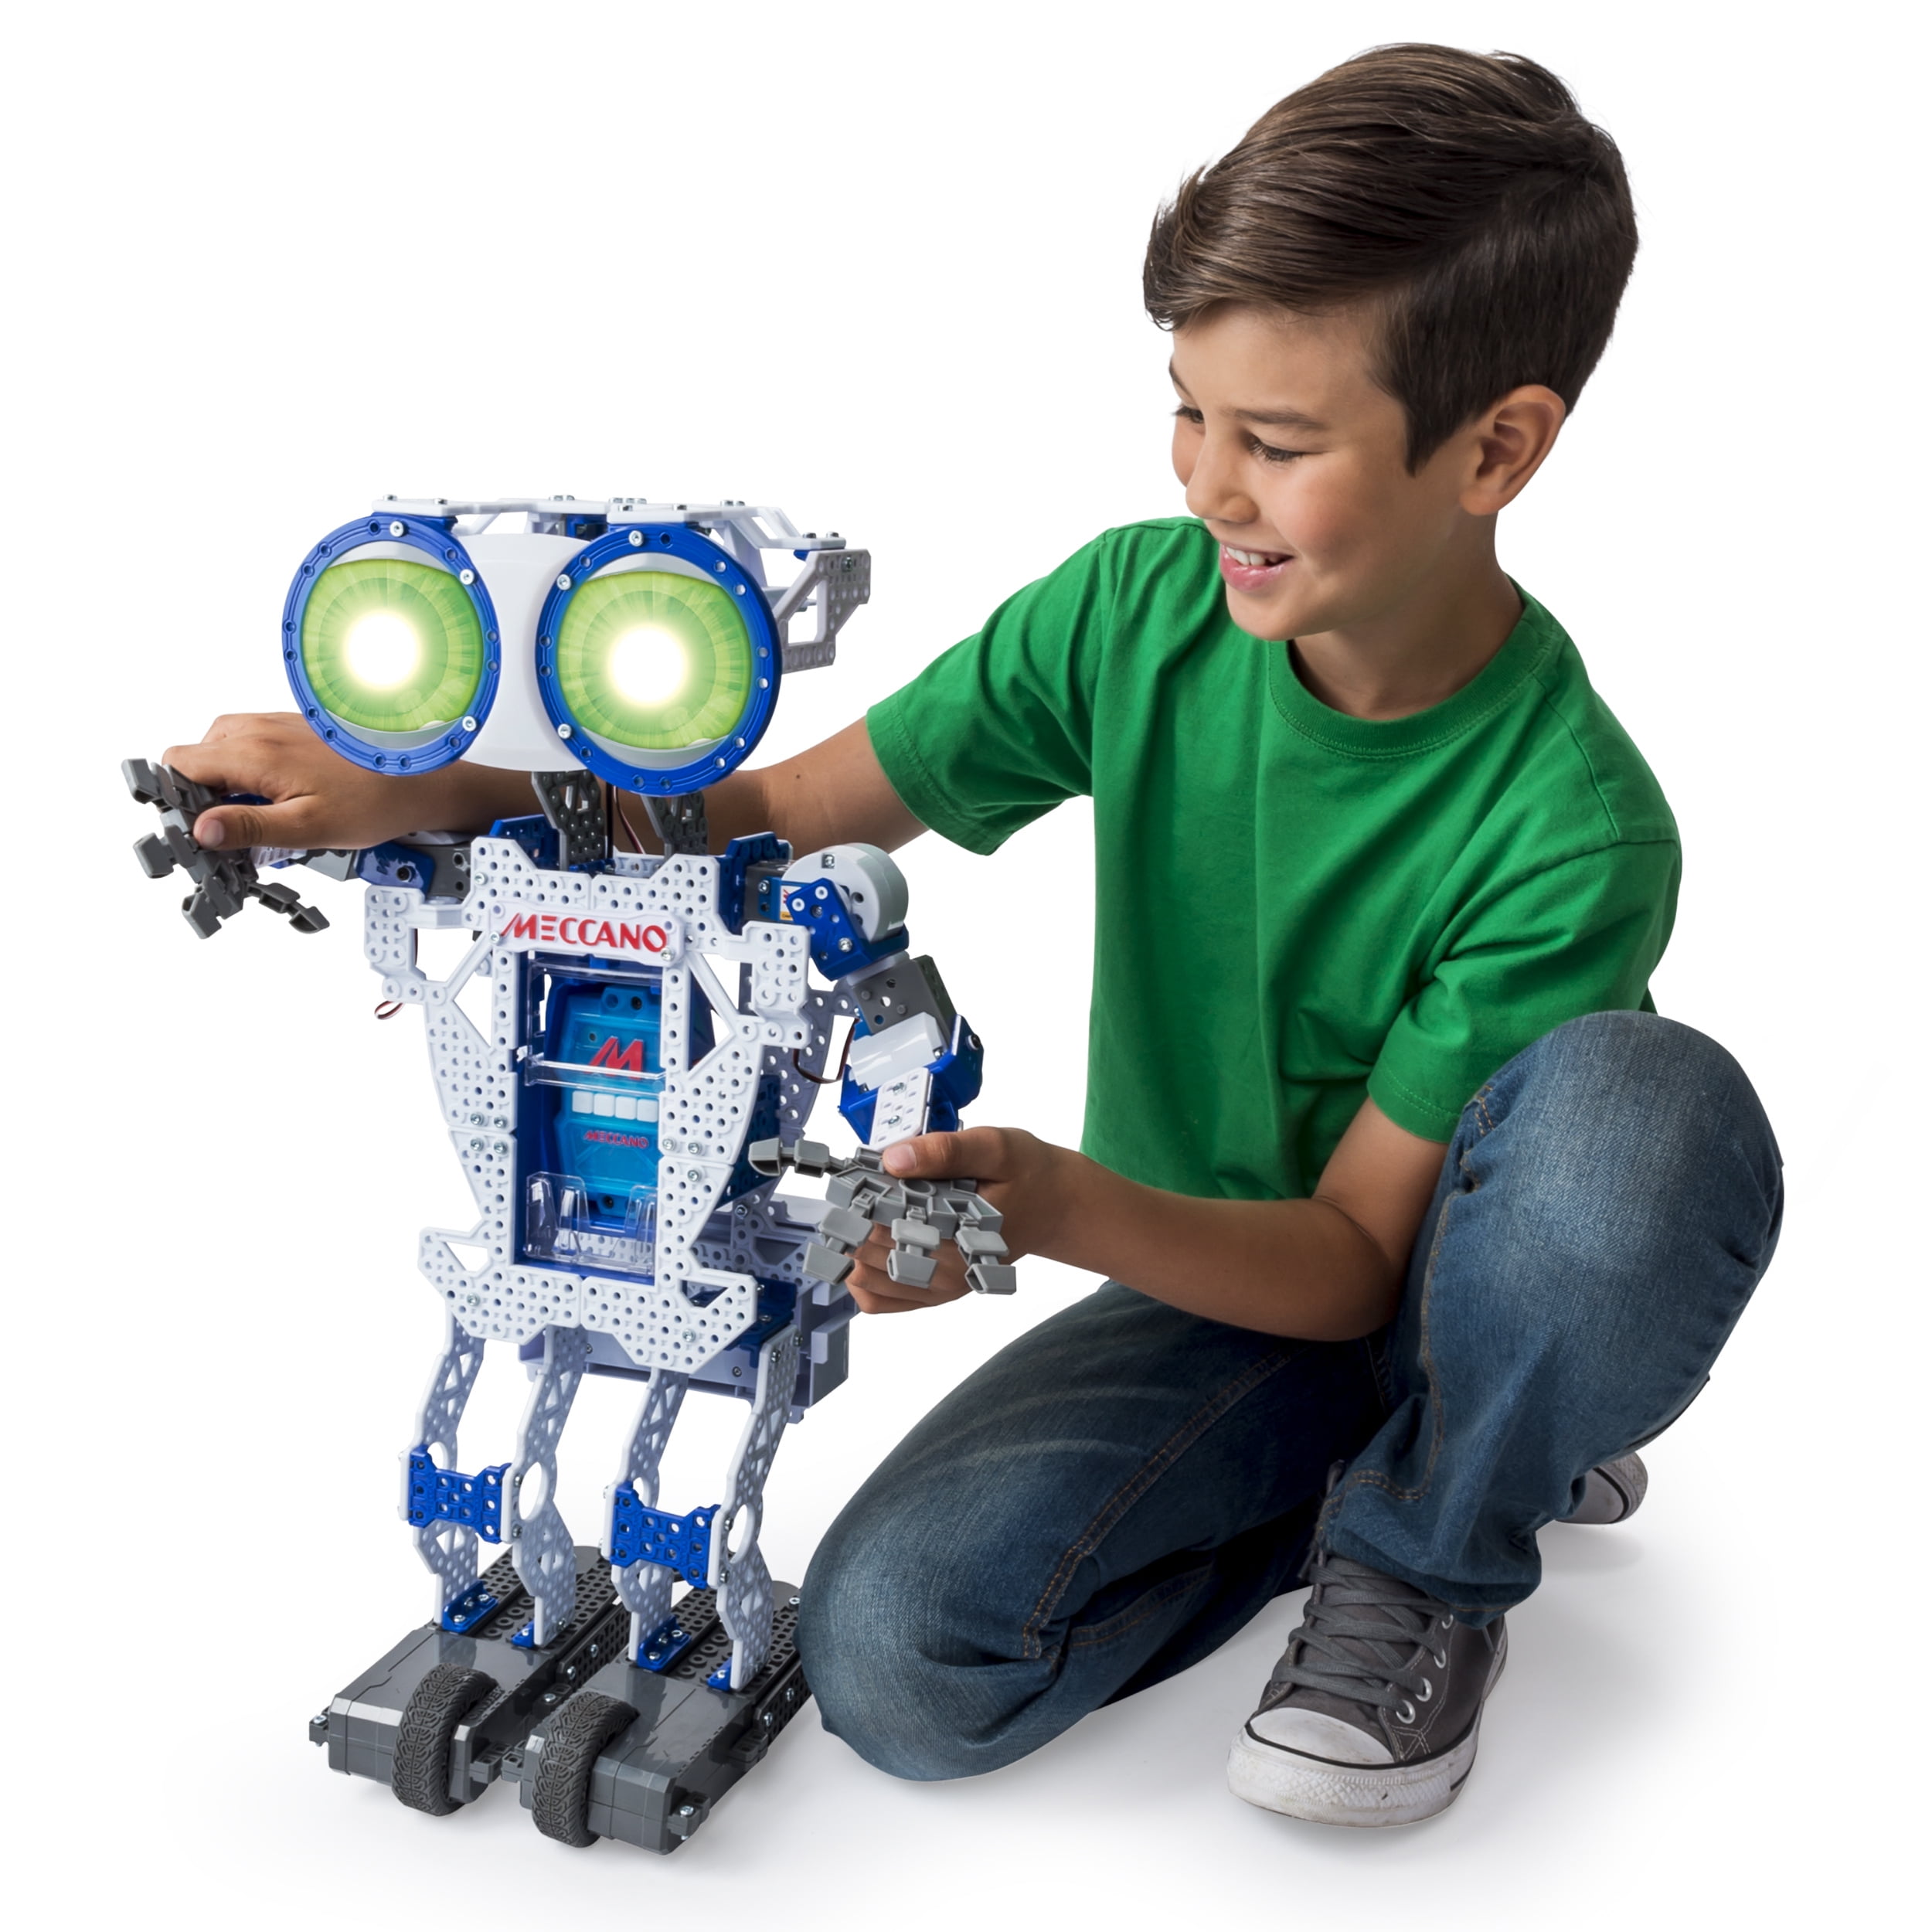 Купить подарок мальчику 10. Робот Меккано Меканоид. Meccano Erector Meccanoid g15. Электронный конструктор робот Meccanoid XL 2.0. Необычные игрушки для мальчиков.